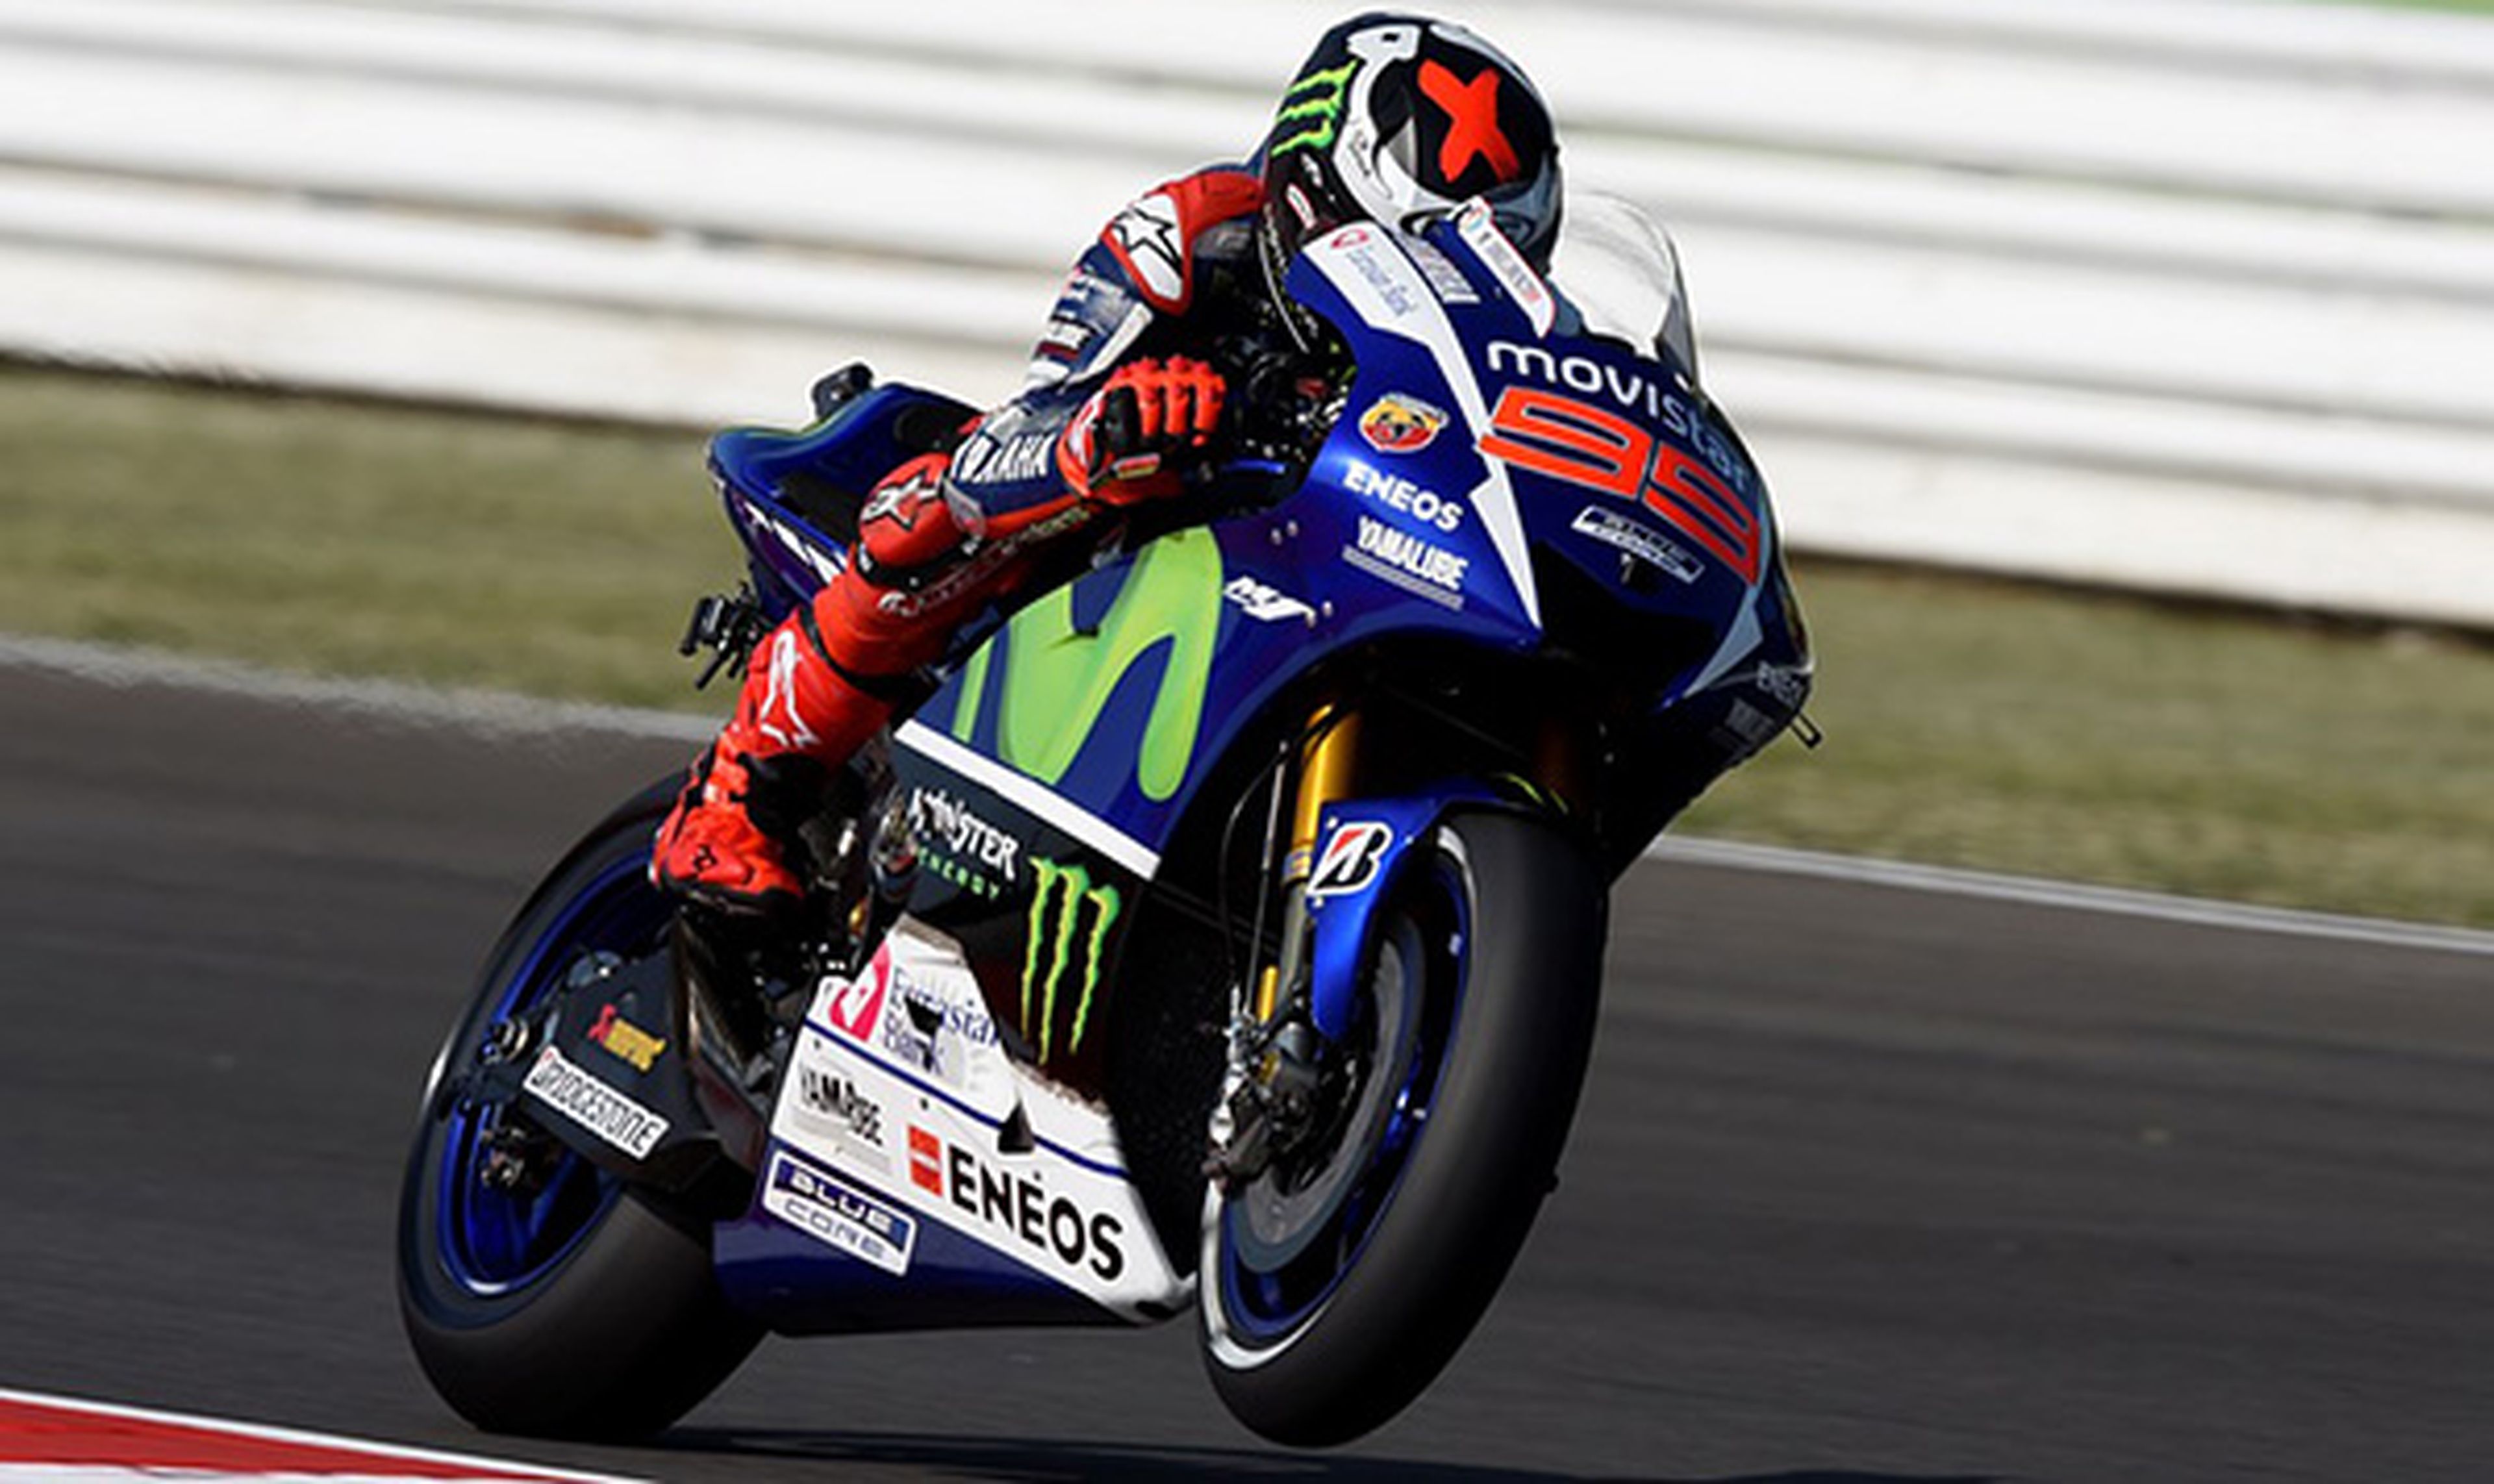 Clasificación MotoGP Misano 2015: golpe y récord de Lorenzo